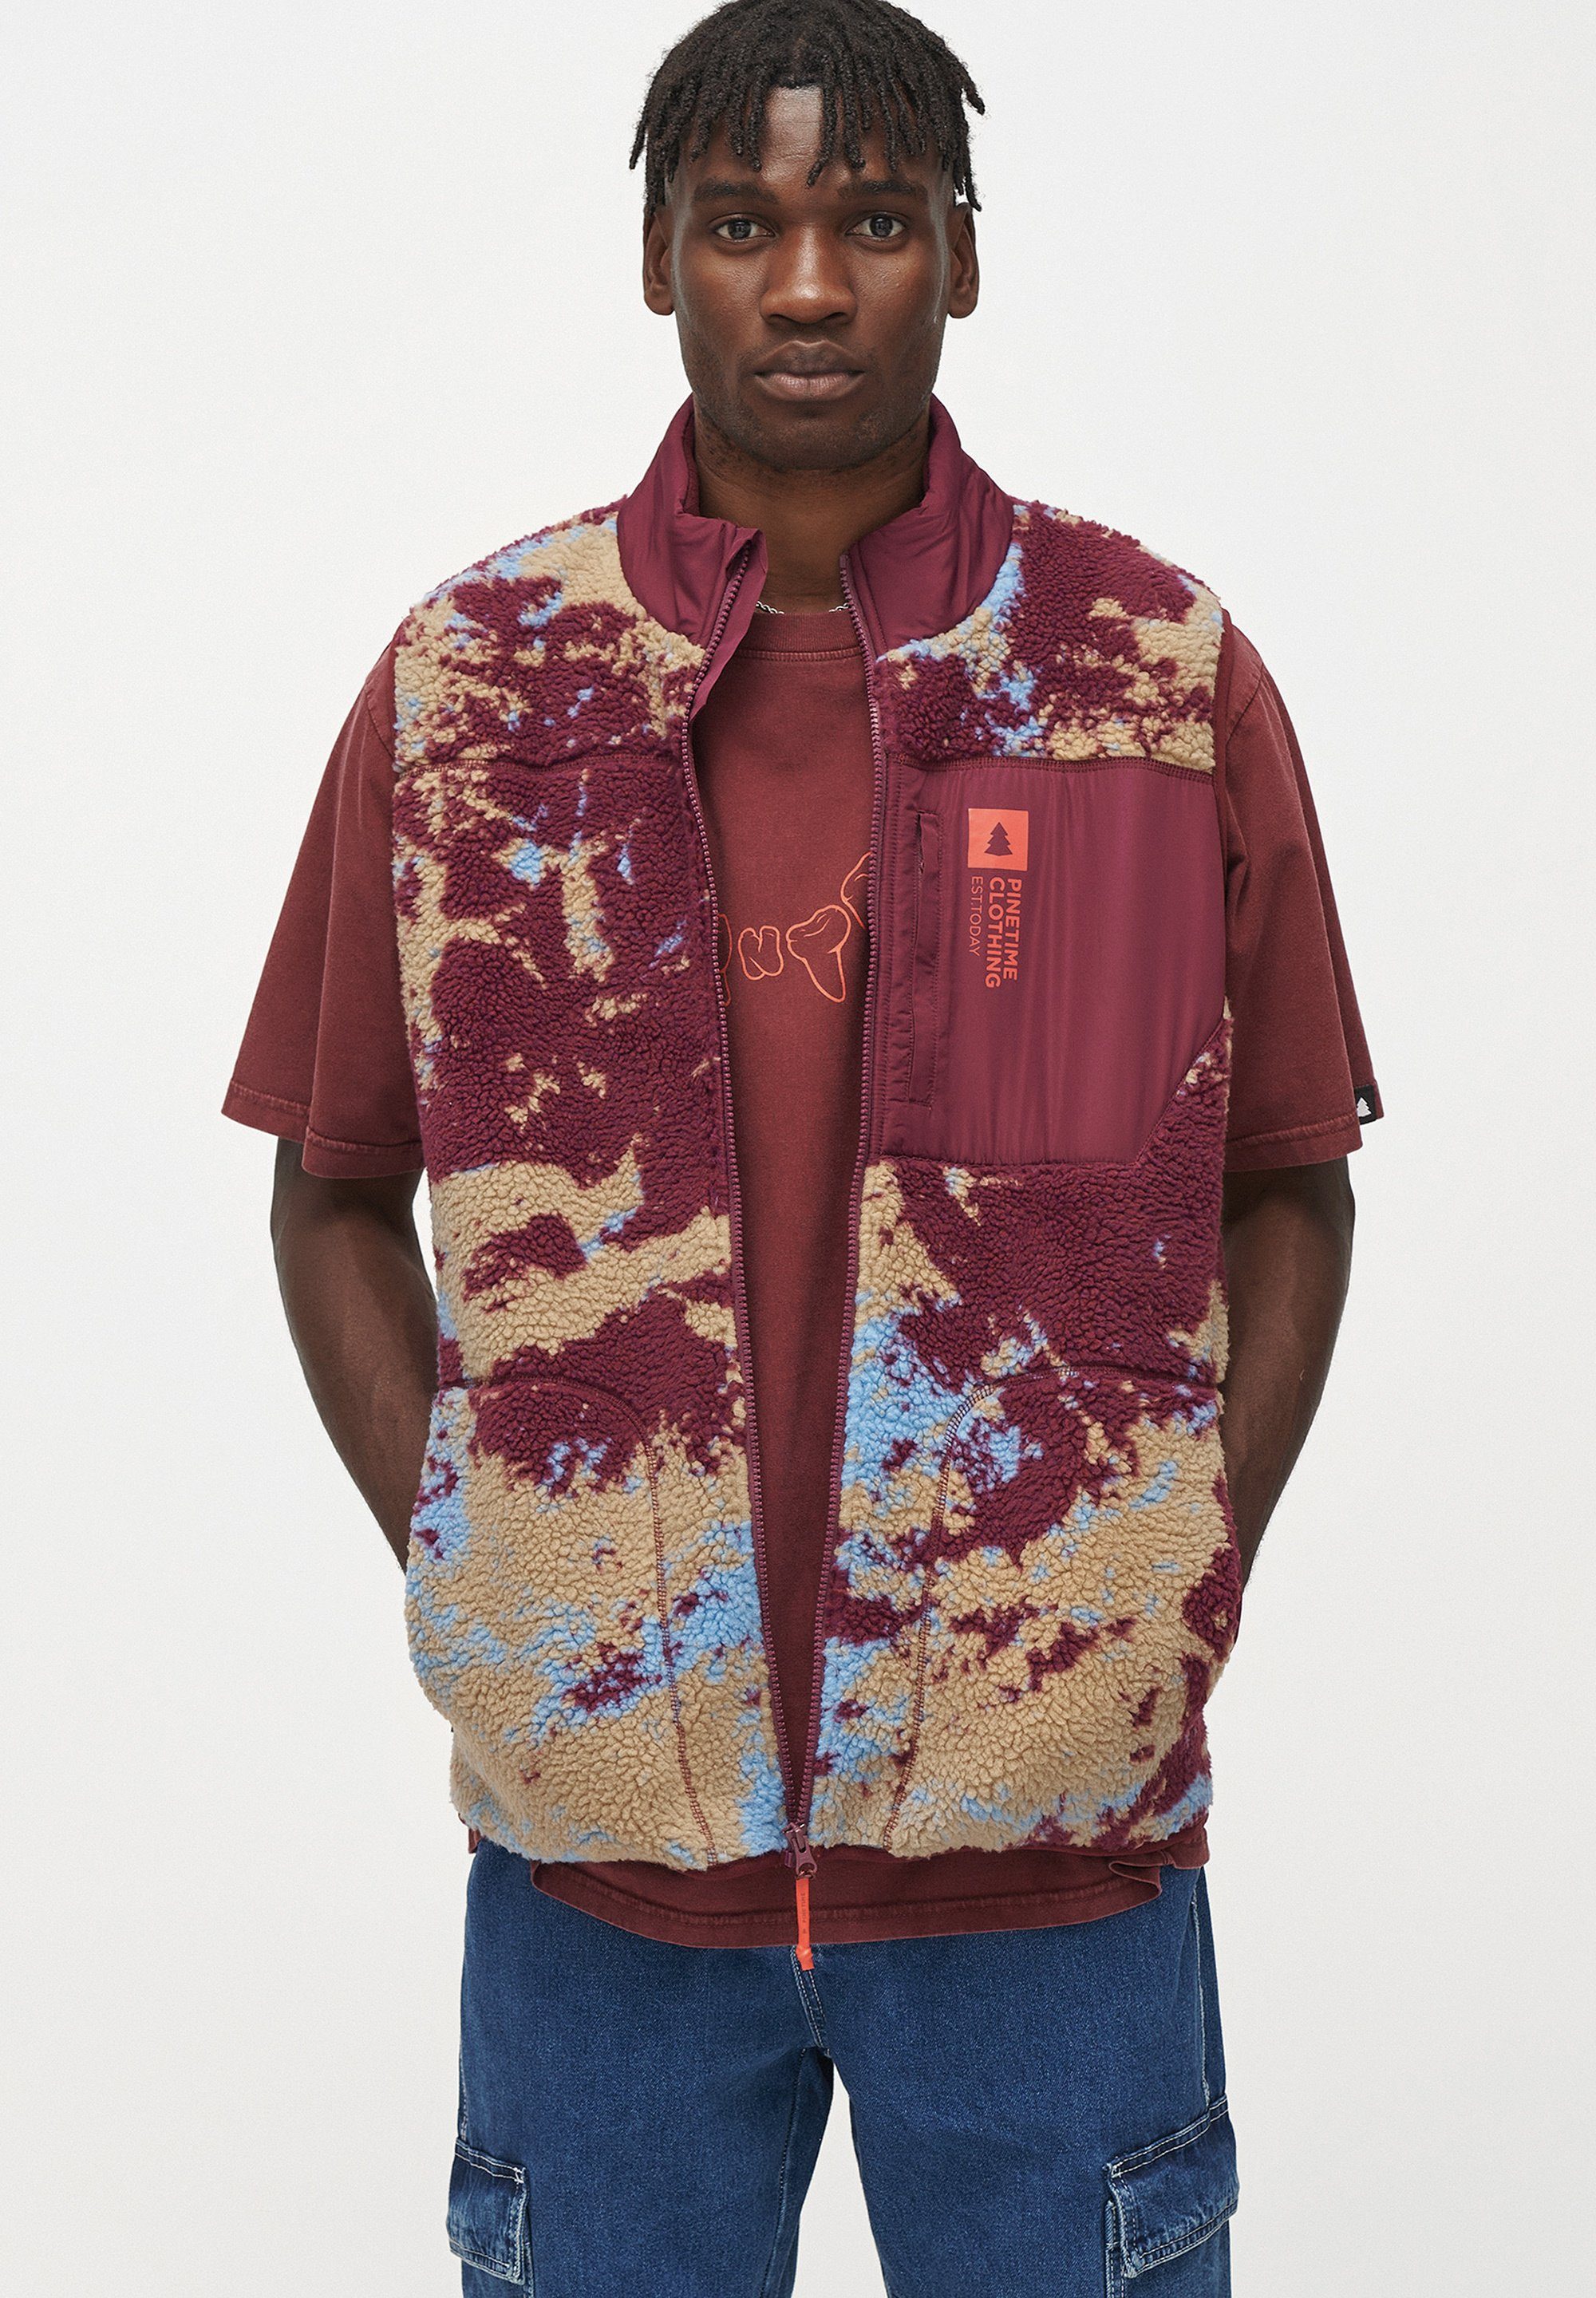 Pinetime Clothing Funktionsweste The Moss Vest Sherpa-Futter bietet außergewöhnliche Wärme für kühle Tage ruby